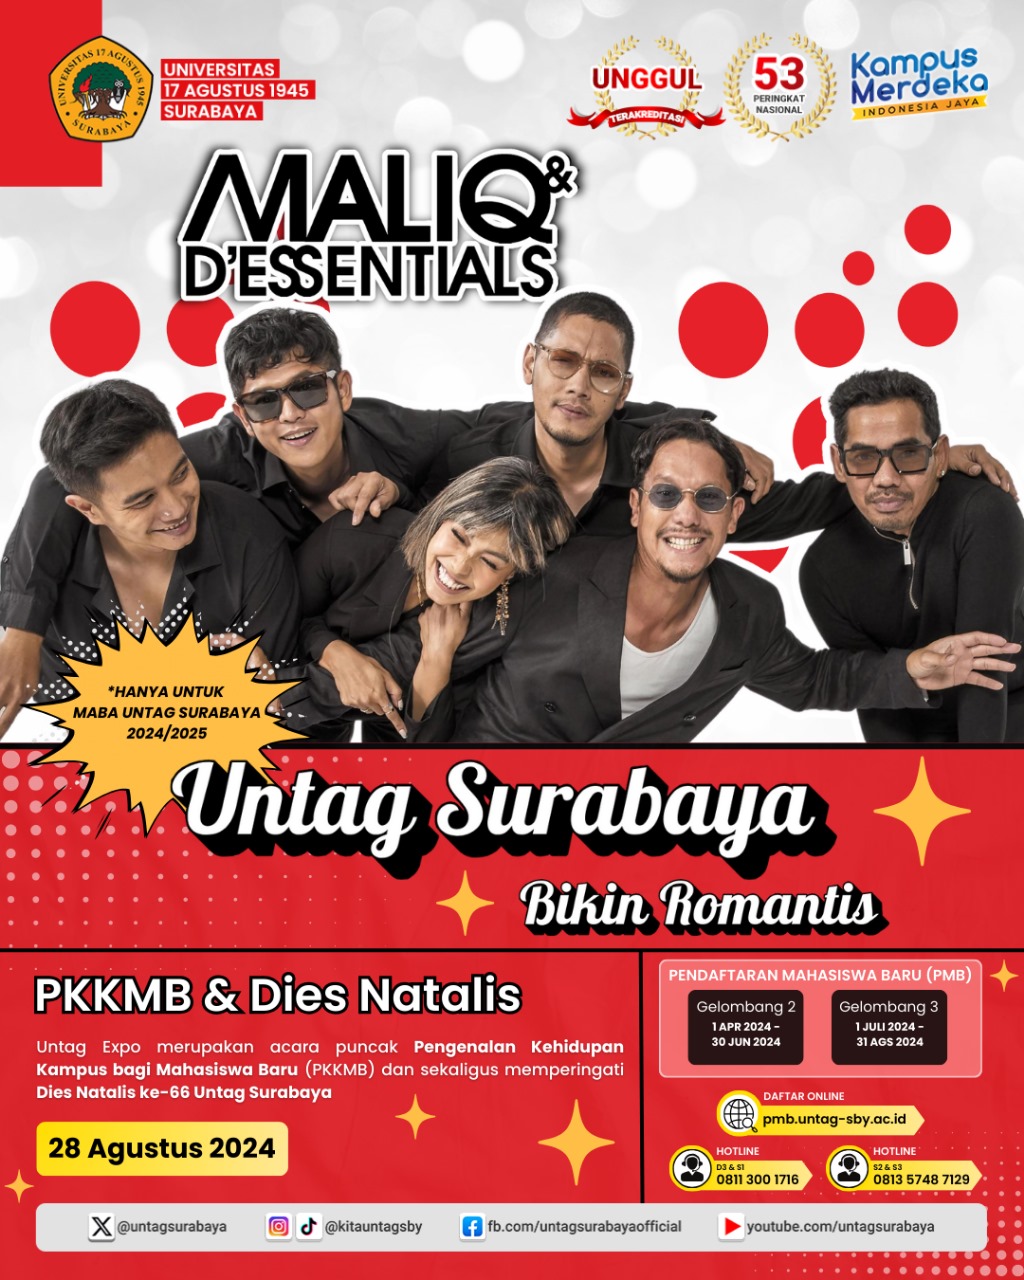 MALIQ & D'ESSENTIALS Bikin Romantis UNTAG Surabaya